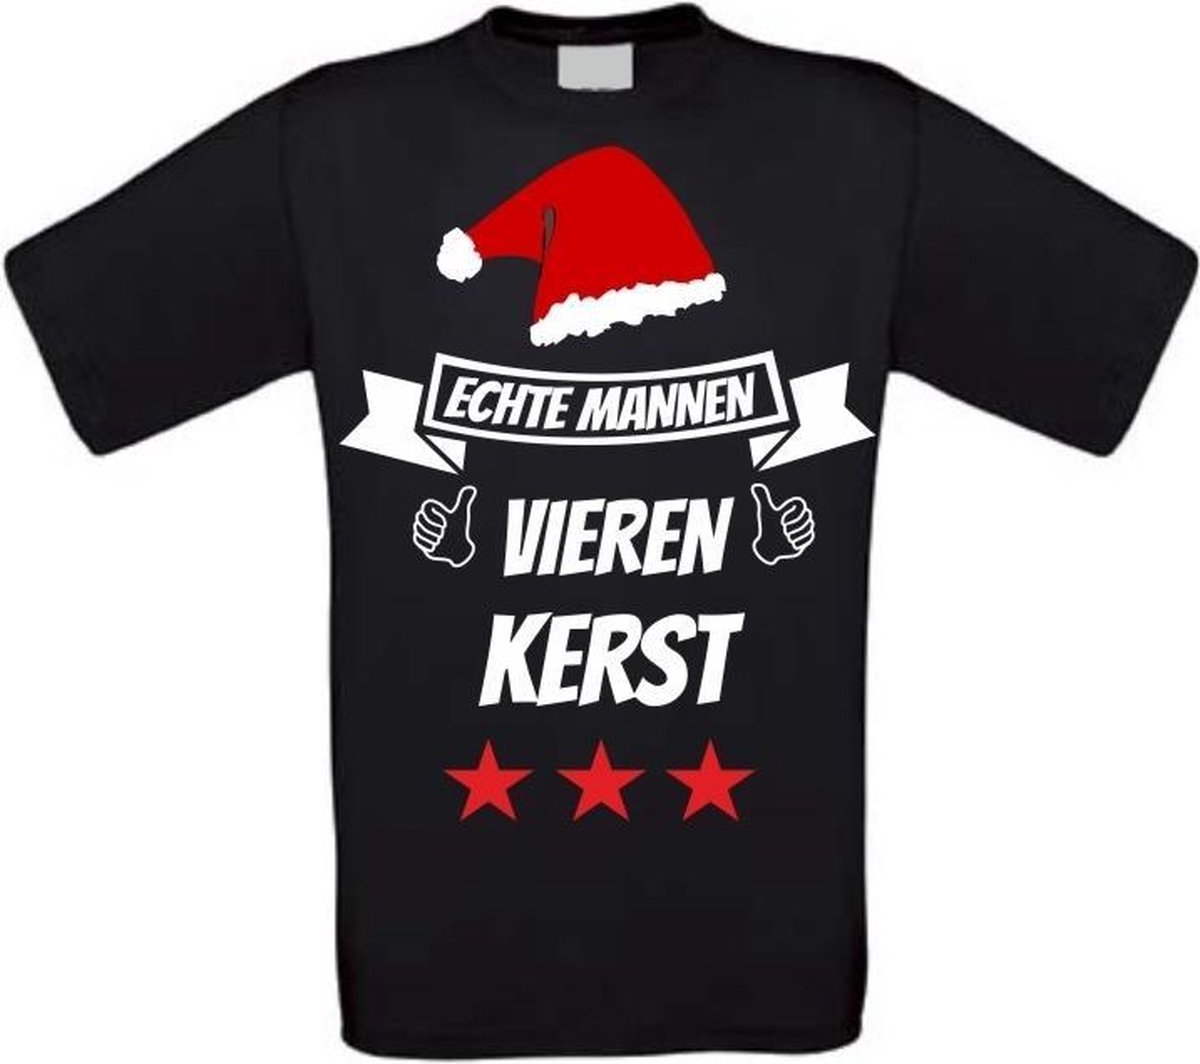 Echte mannen vieren kerst T-shirt maat L zwart | bol.com